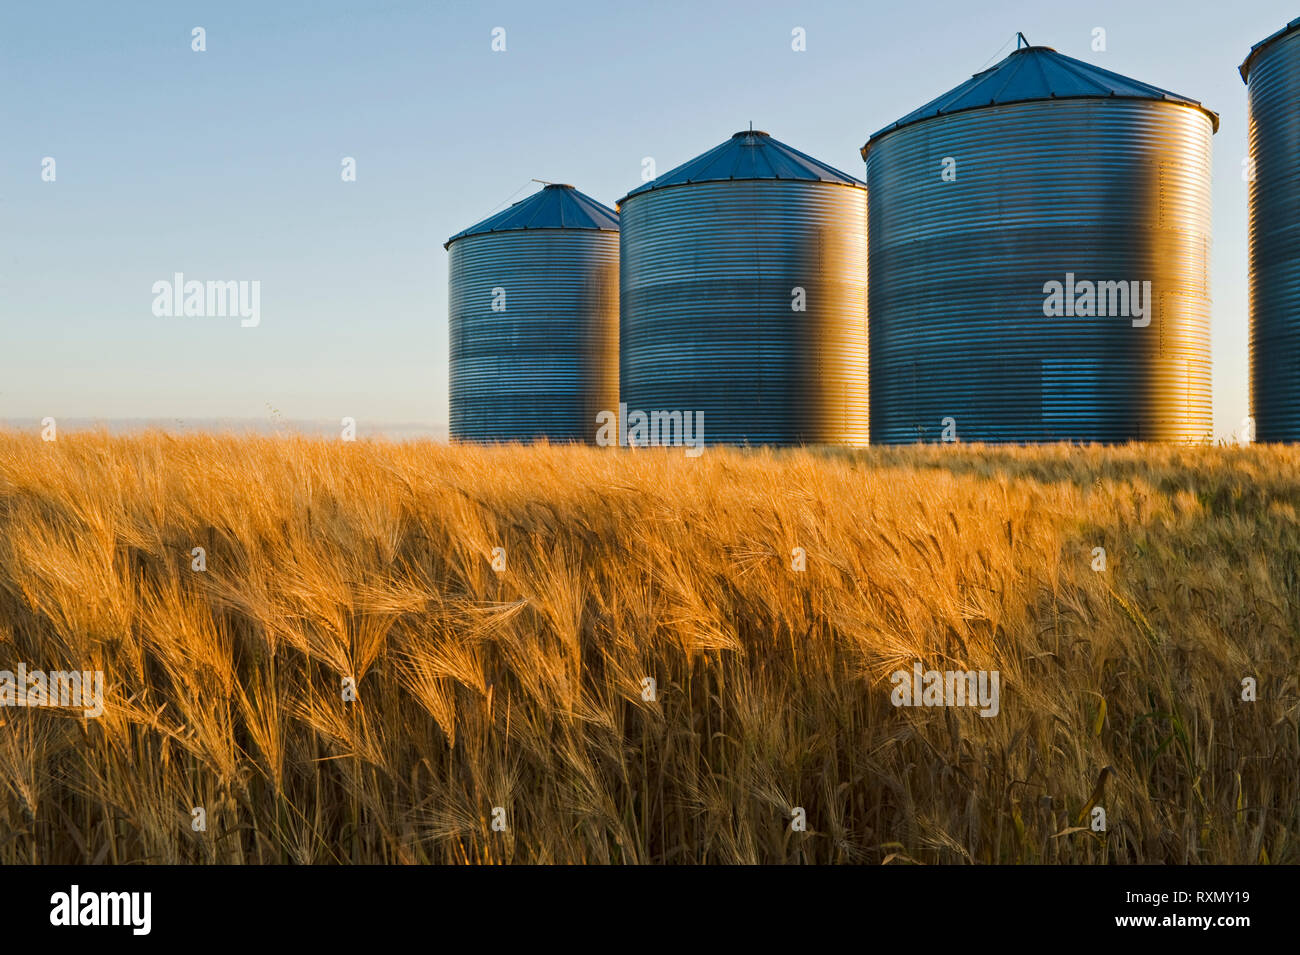 Der Heranreifenden Gerste Feld mit Getreide Lagerung Behälter/Silos in den Hintergrund, die in der Nähe von Carey, Manitoba, Kanada Stockfoto